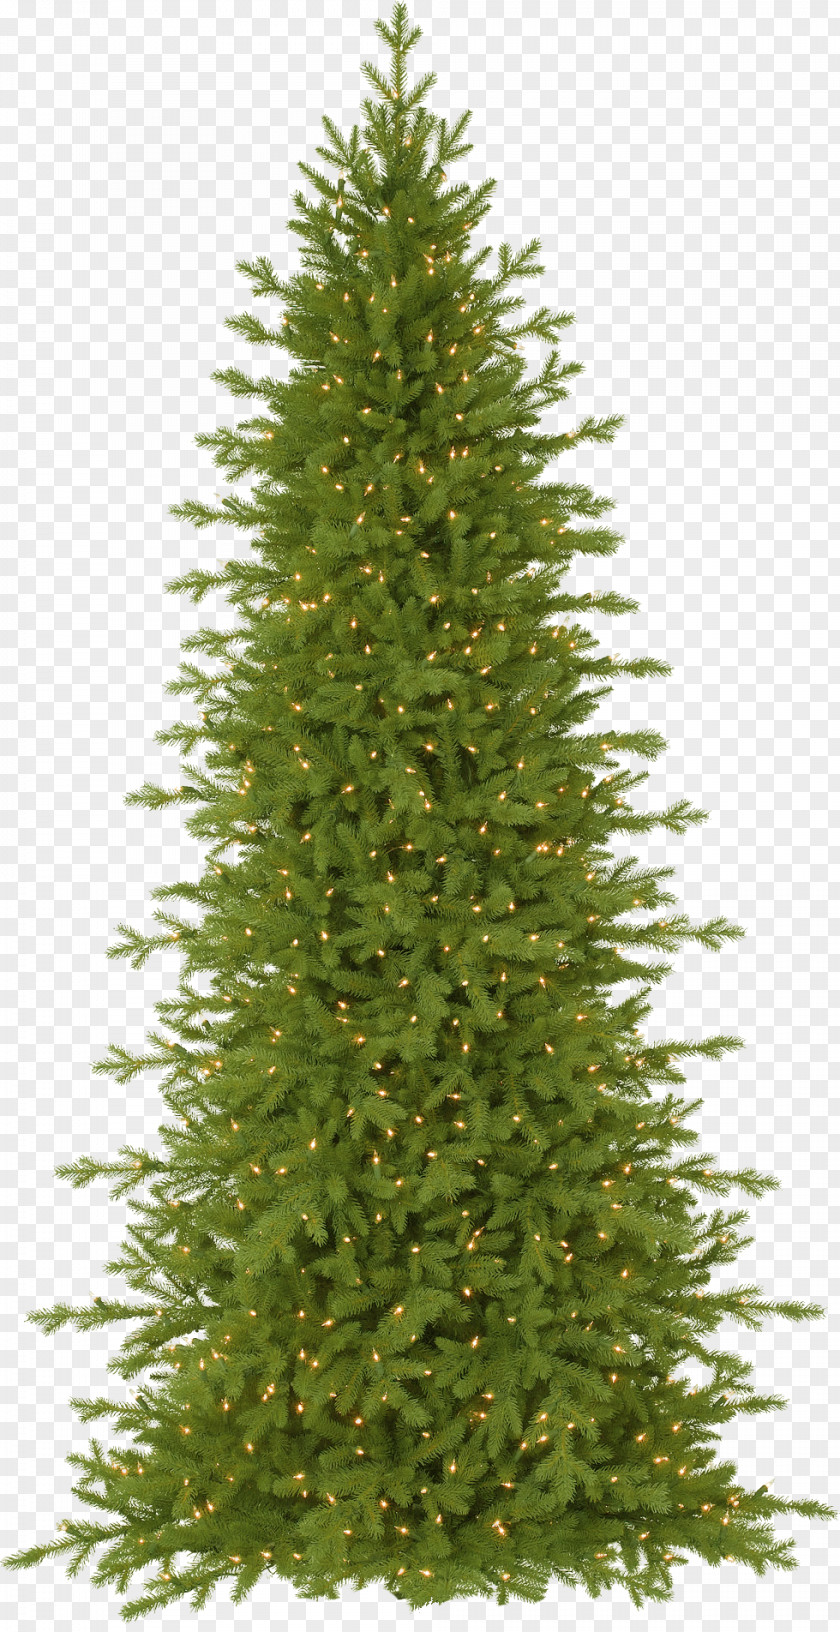 Golden Neon Christmas Tree Picea Rubens Balsam Hill Artificial Fir PNG